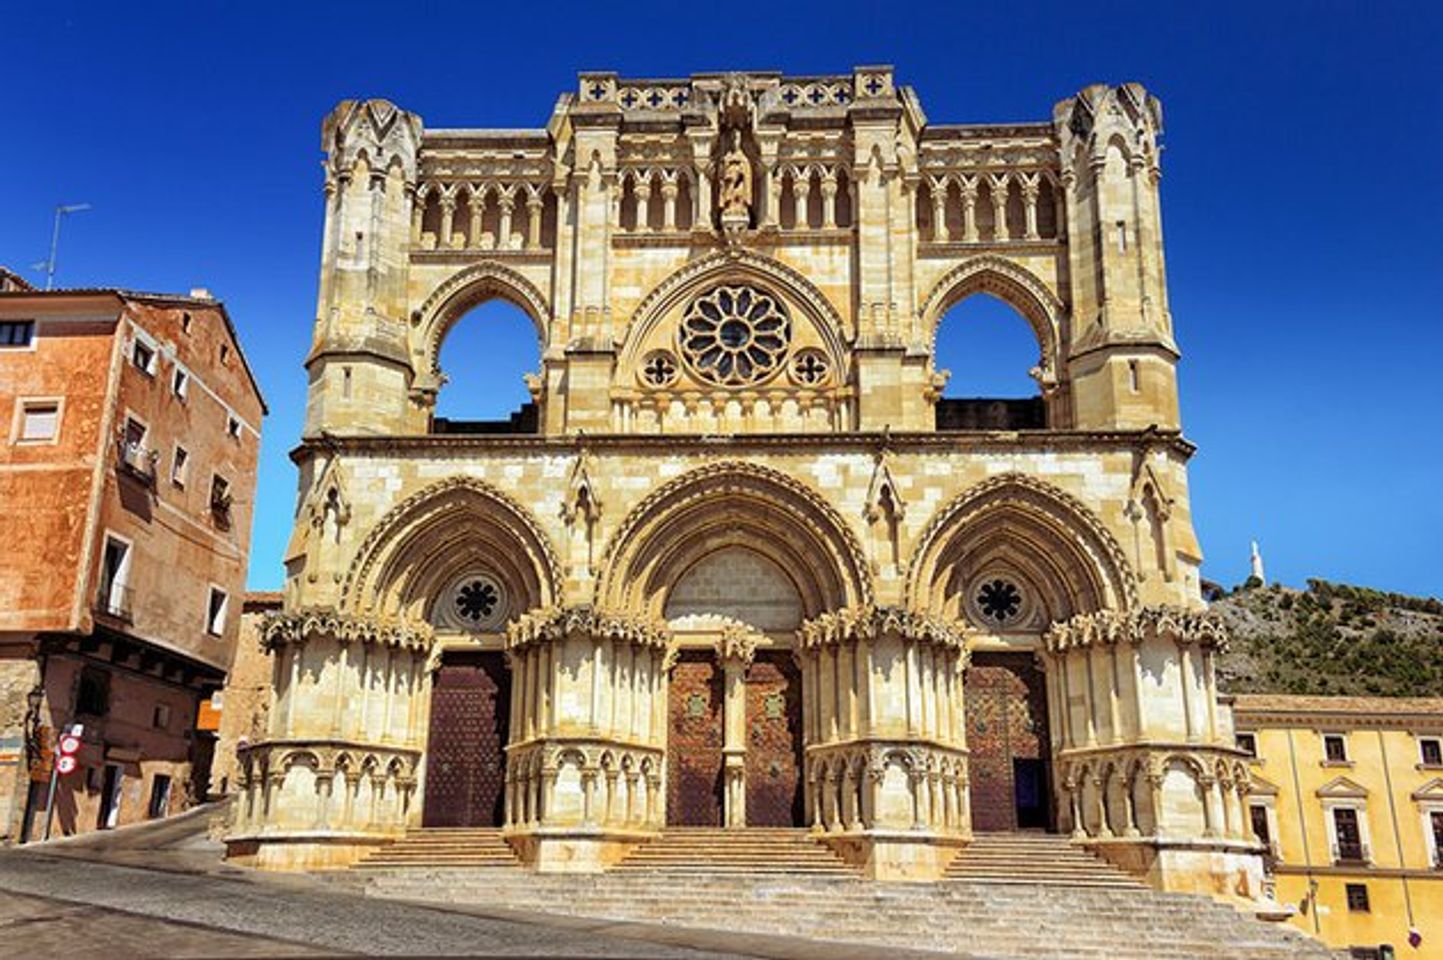 « Une merveille majestueuse : découvrez lhistoire et la beauté de la nouvelle cathédrale de Cuenca »